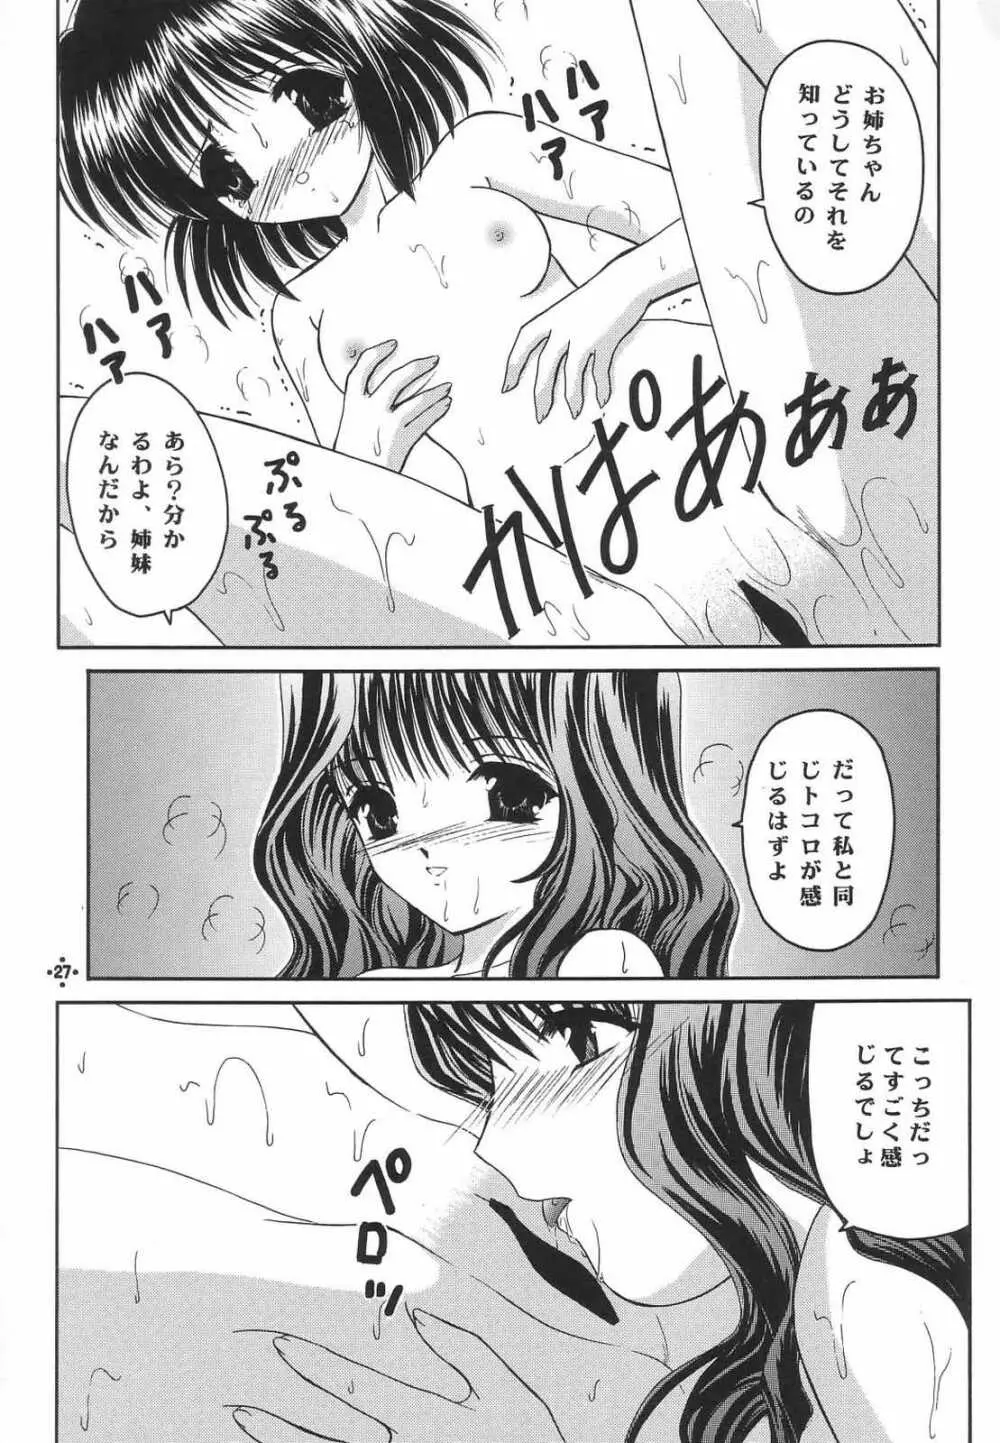 Shimensoka 8 - page26